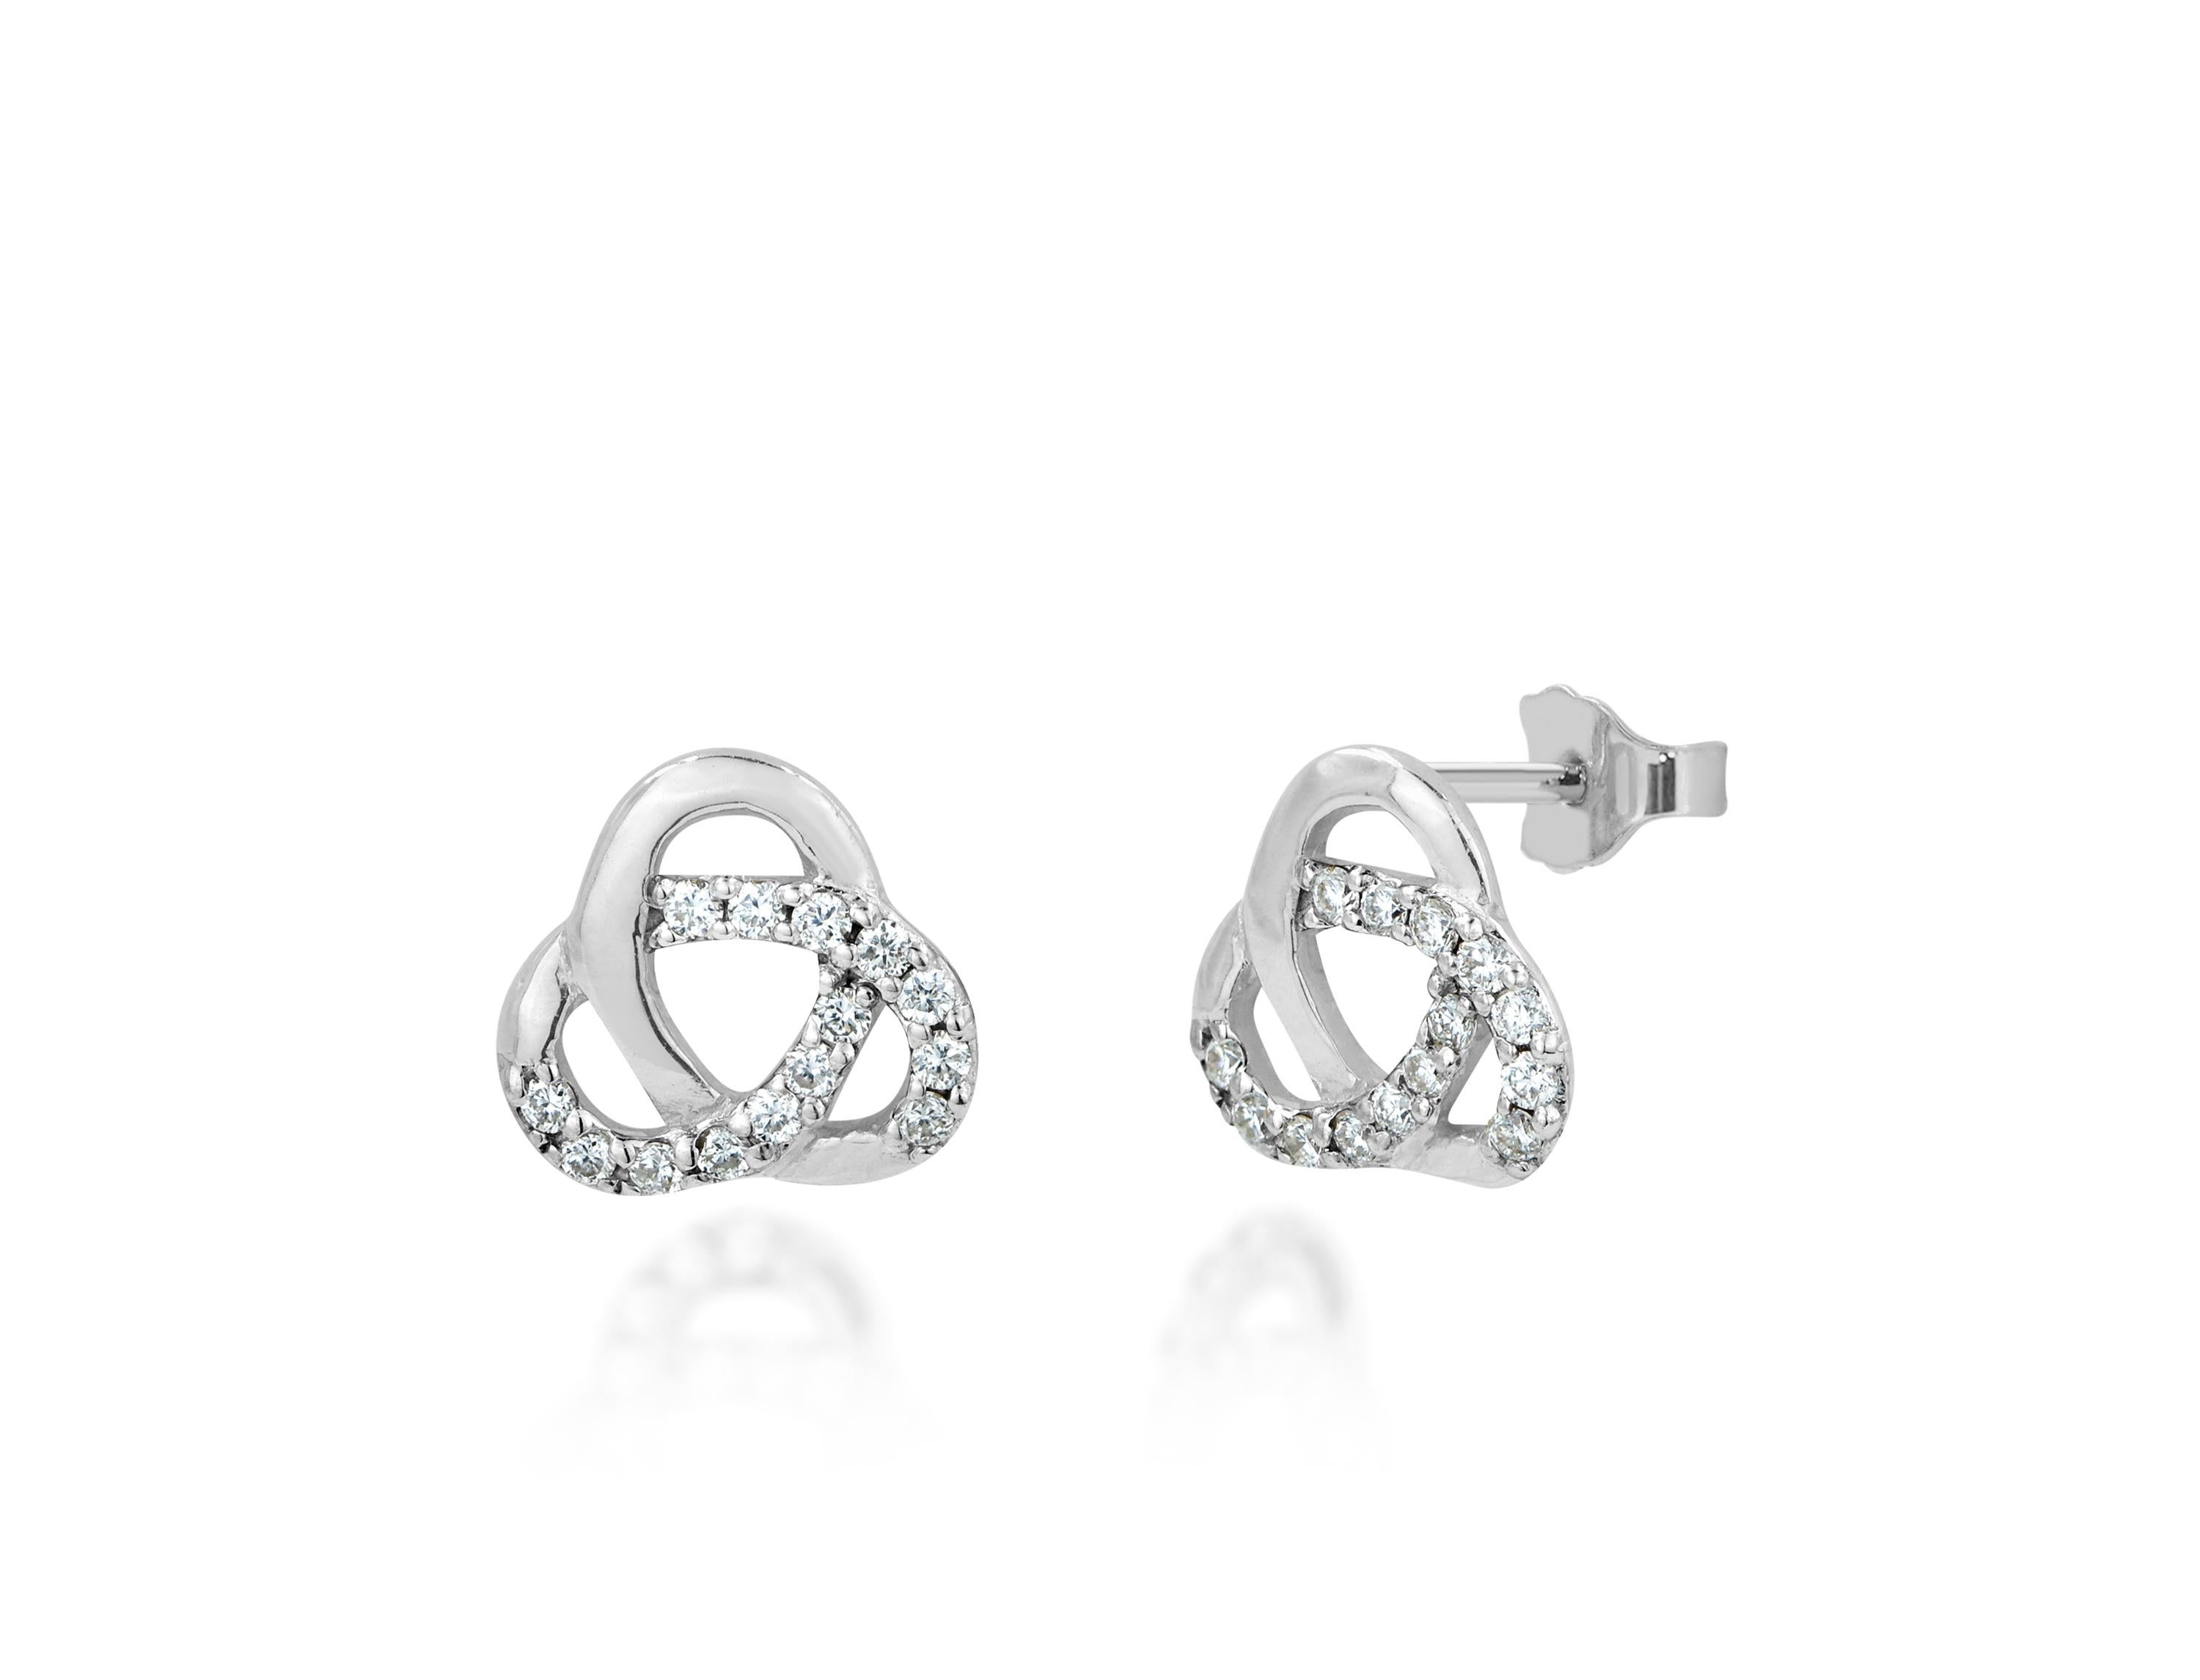 18k love knot earrings